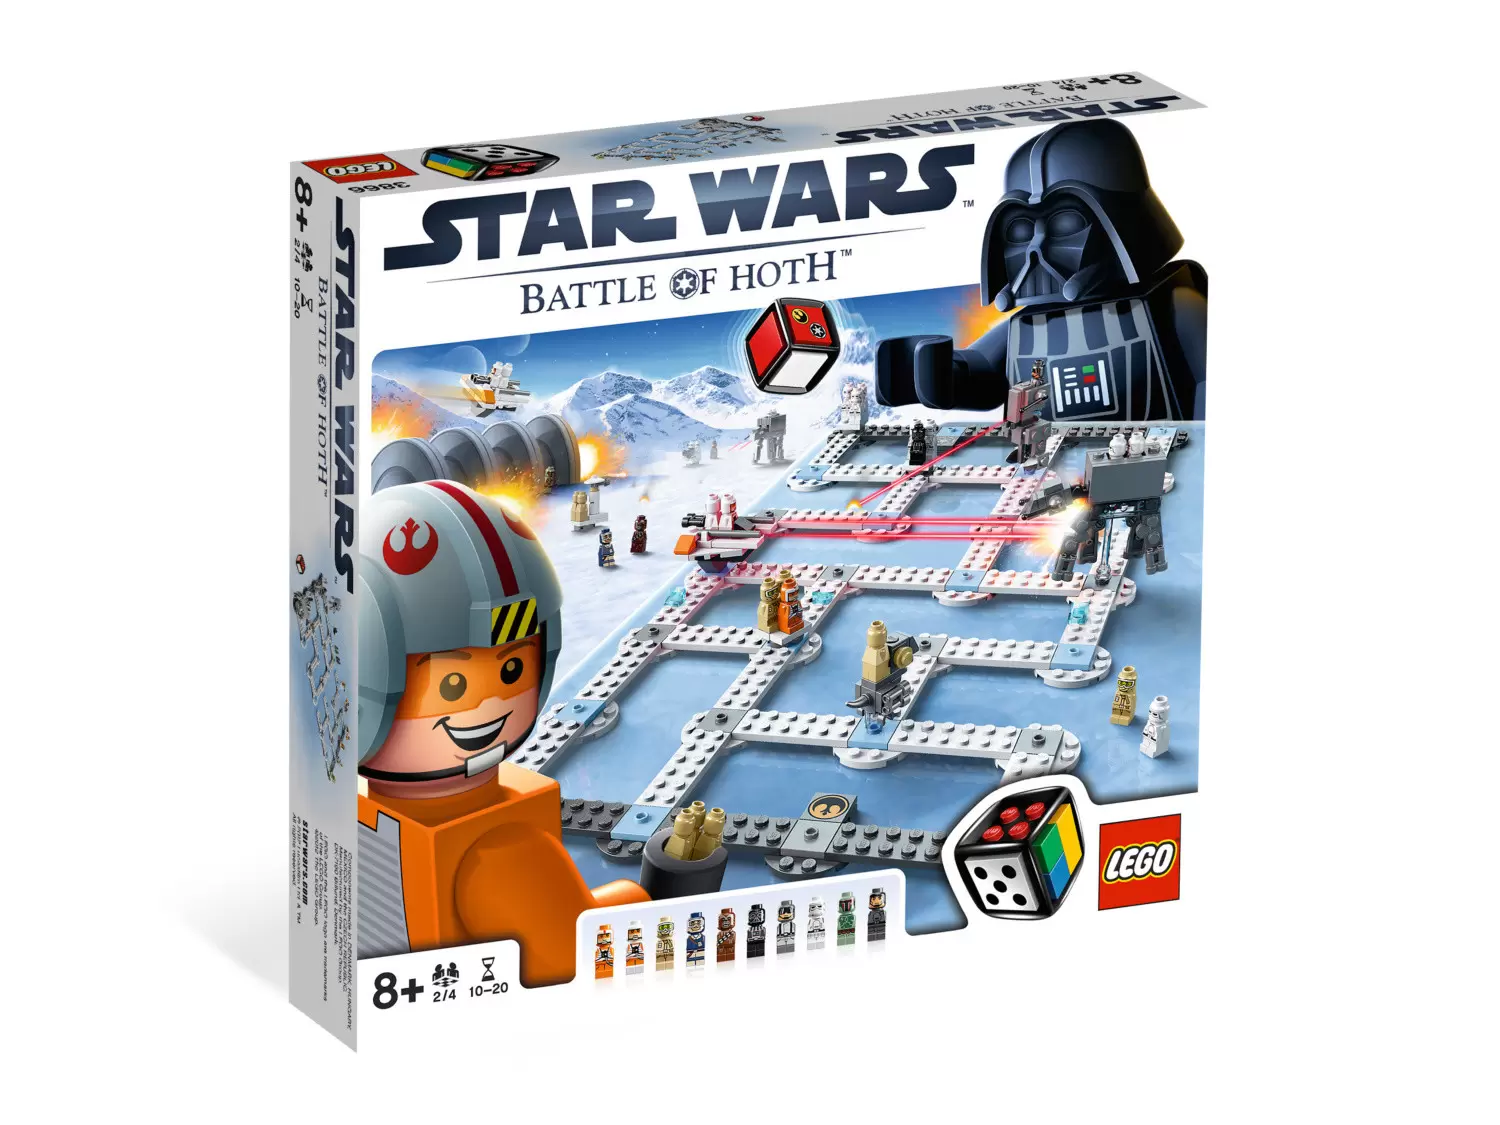 LEGO Star Wars - Star Wars Battle of Hoth